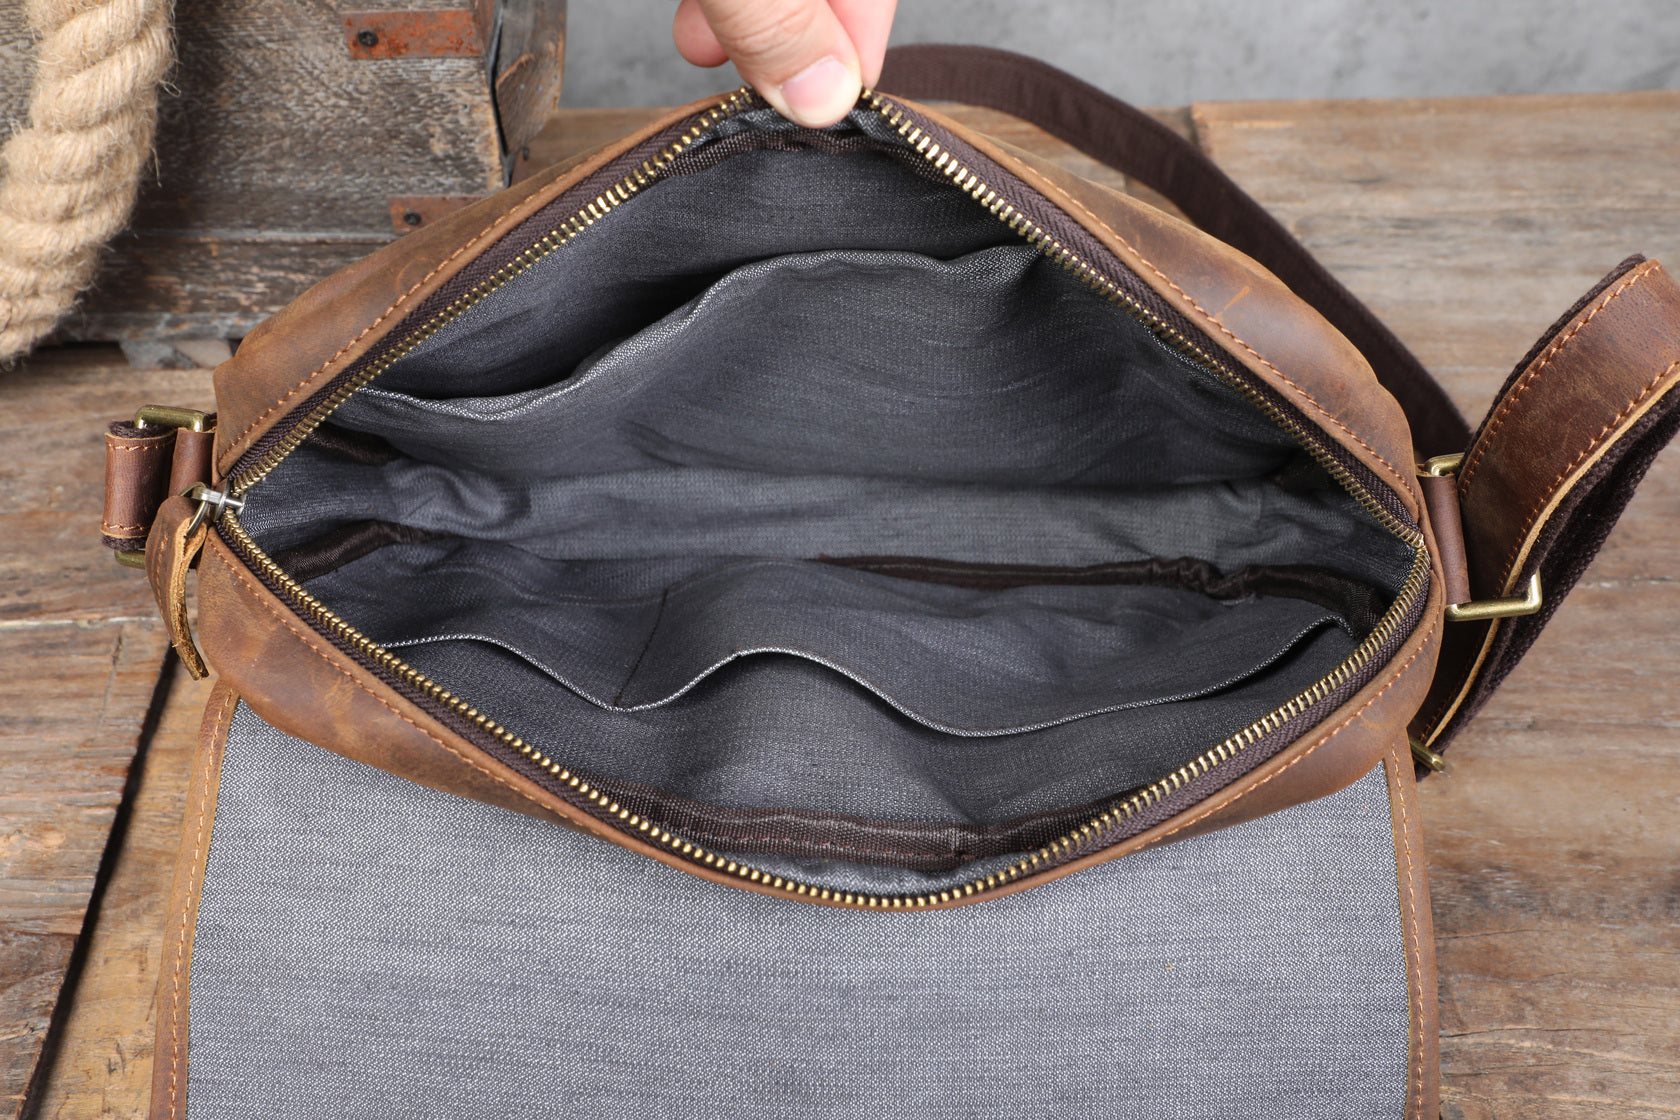 aged leather messenger bag